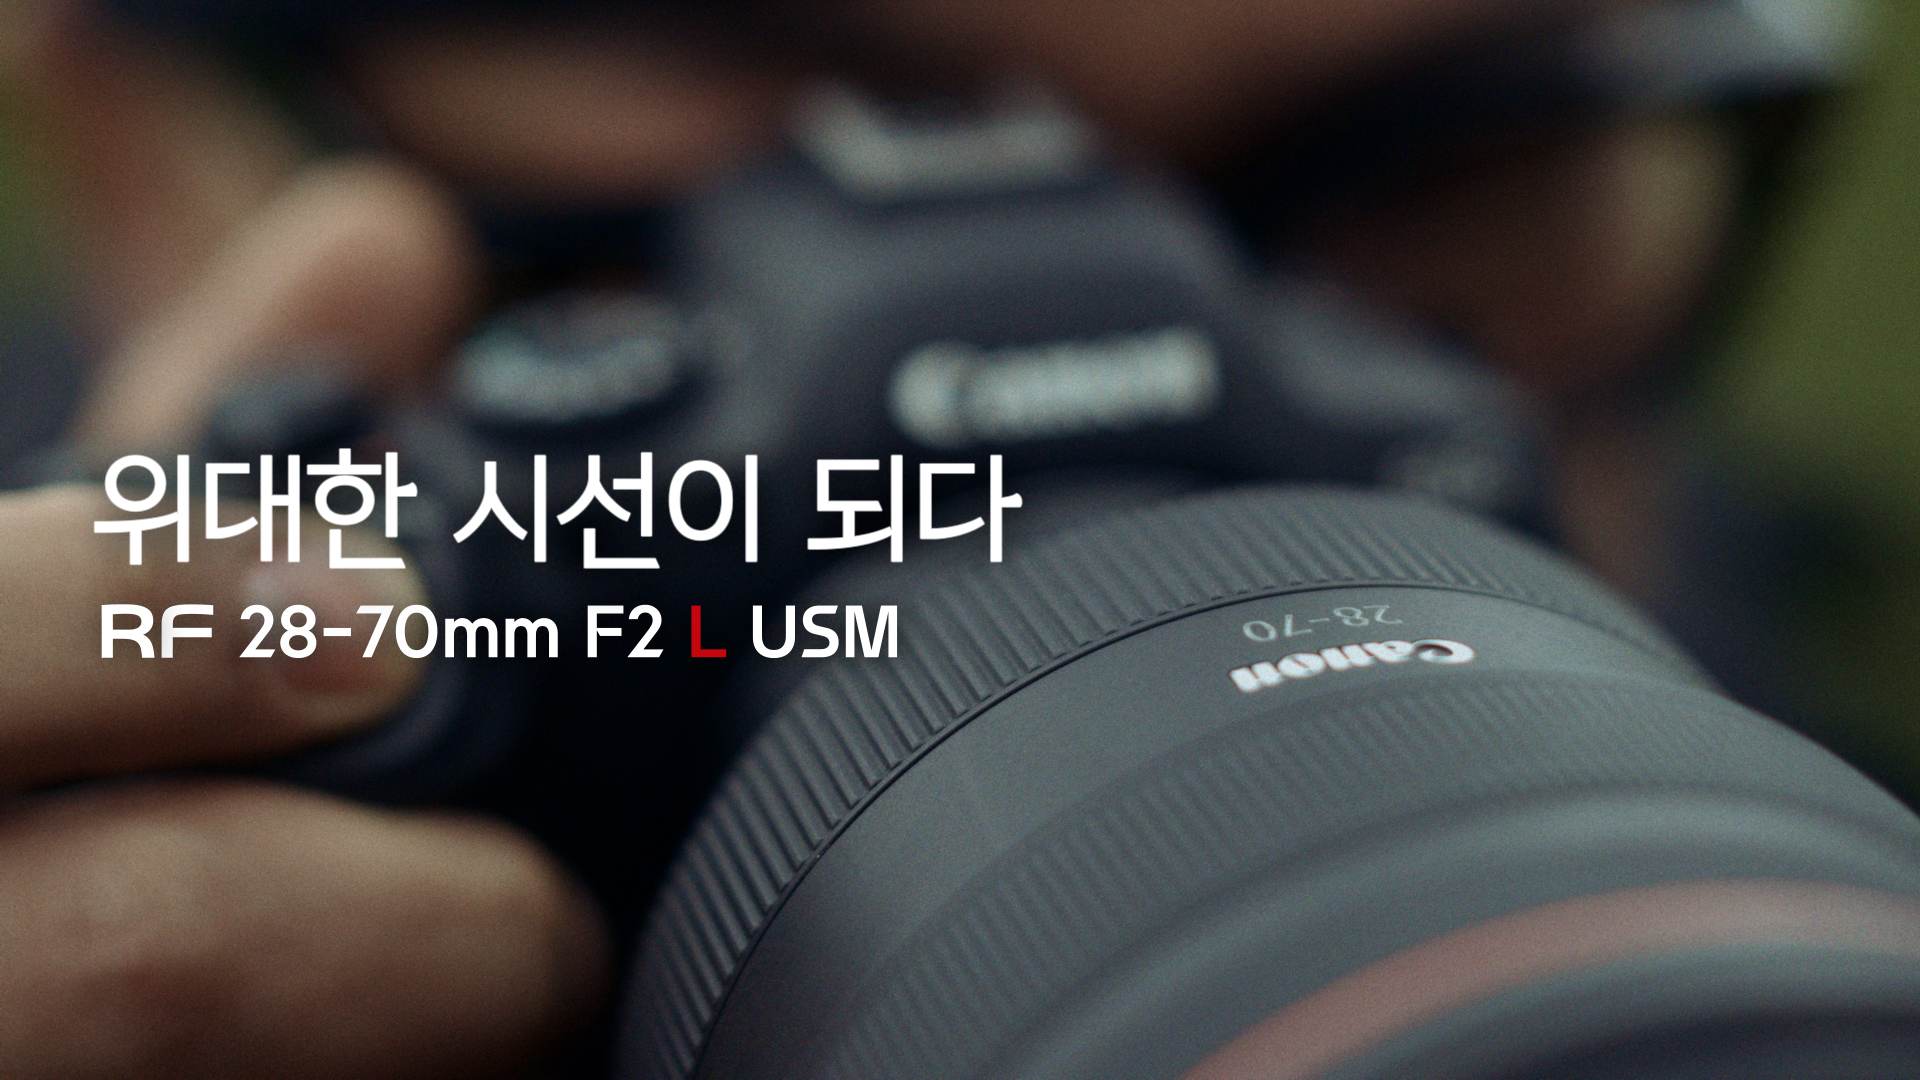 [위대한 시선] RF28-70mm F2 L USM